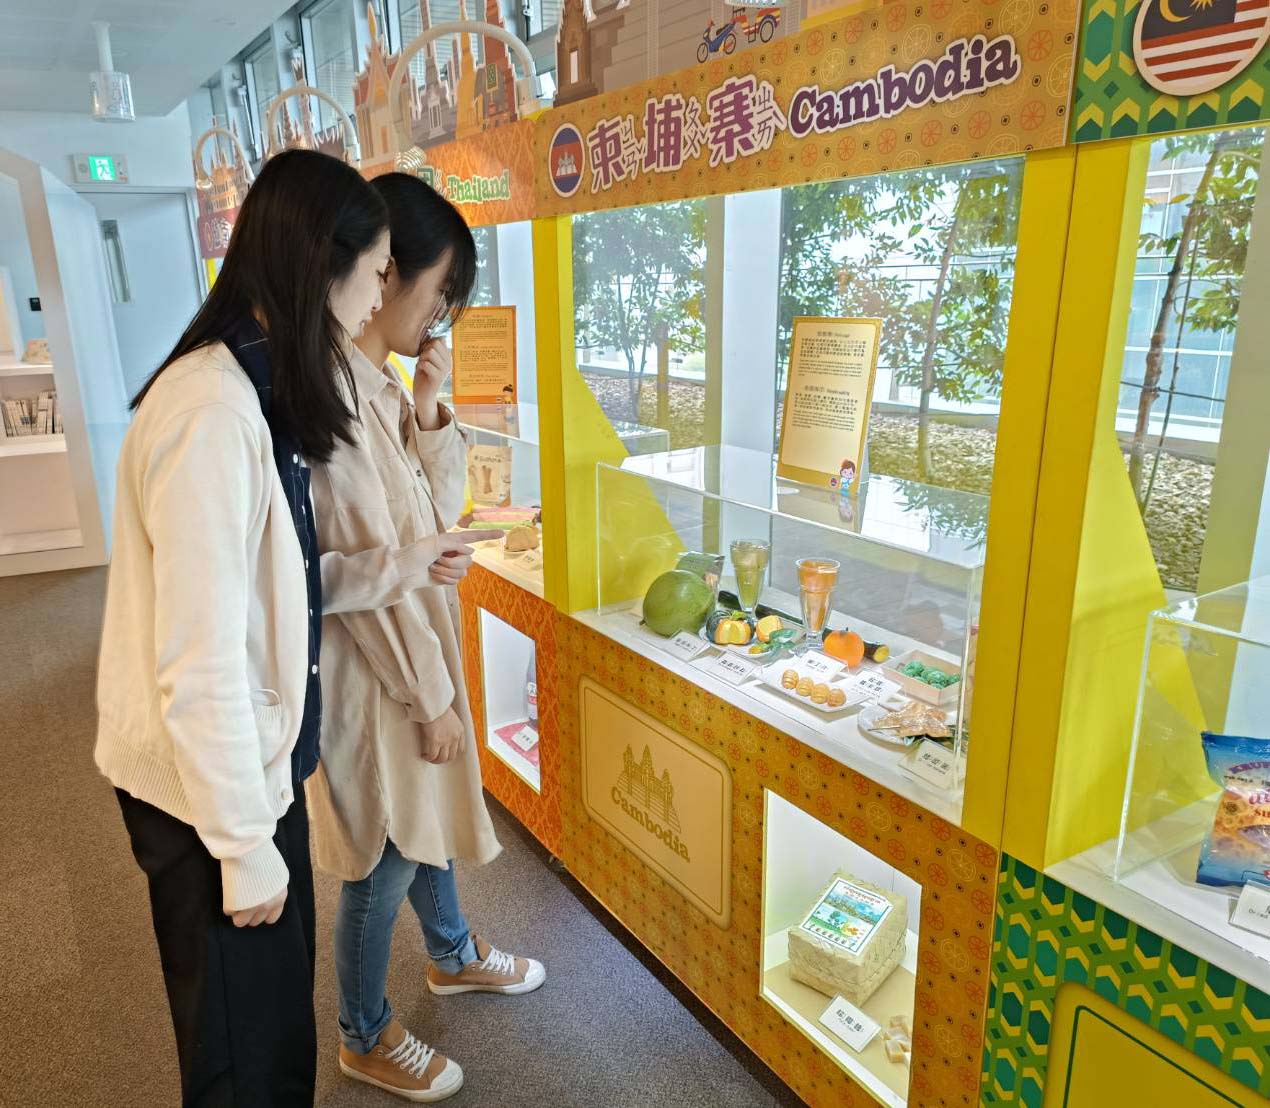 ห้องสมุดเทศบาลเกาสง จัดนิทรรศการ “รำลึกวัยเด็ก : ชมรมเด็กเอเชียตะวันออกเฉียงใต้” แนะนำวัฒนธรรม 5 ประเทศในเอเชียตะวันออกฉียงใต้  ภาพ／นำมาจาก Kaohsiung Public Library